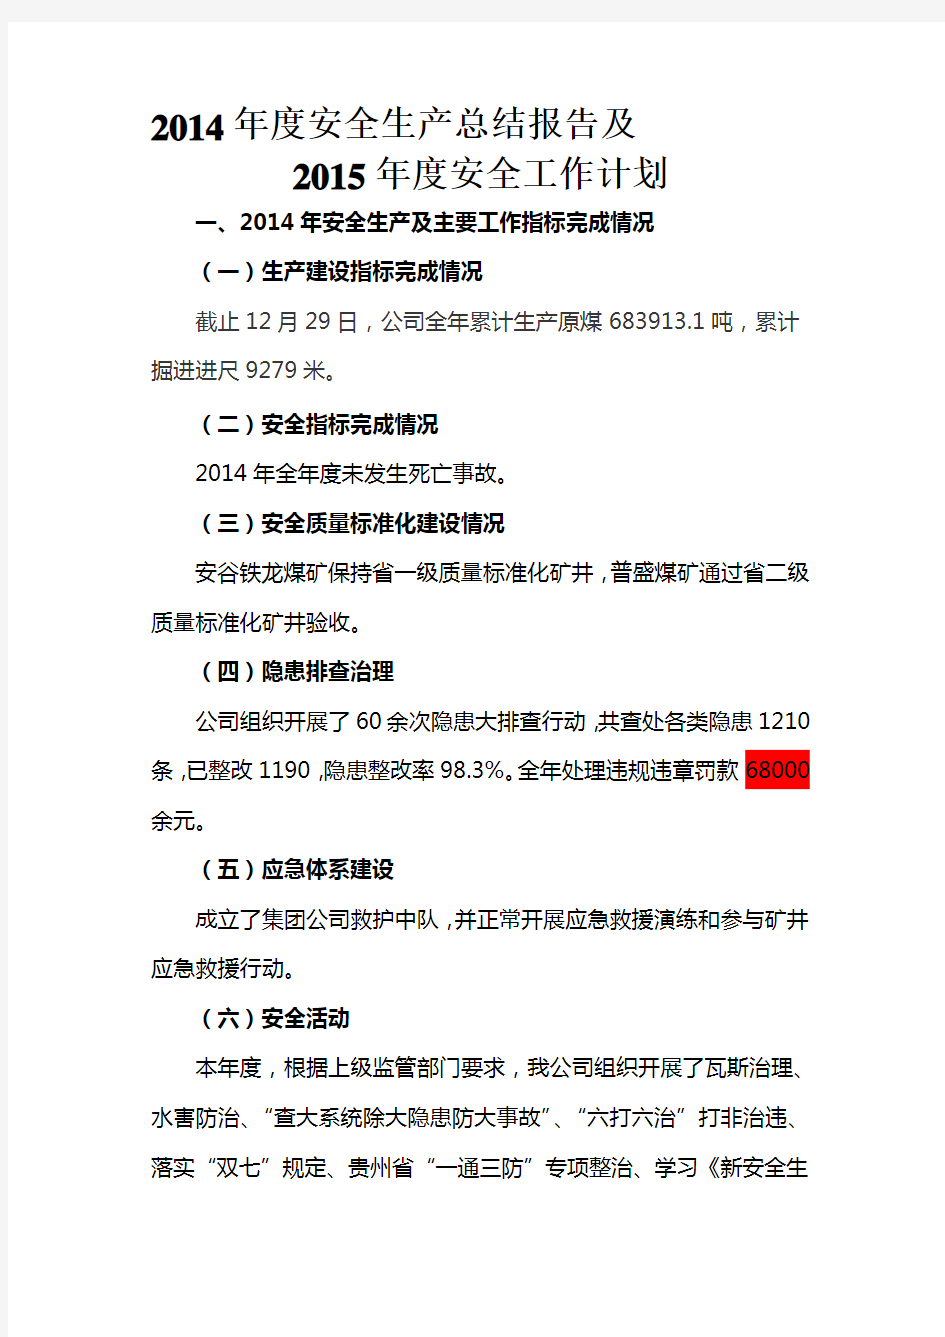 永峰公司2014年度安全生产工作总结报告